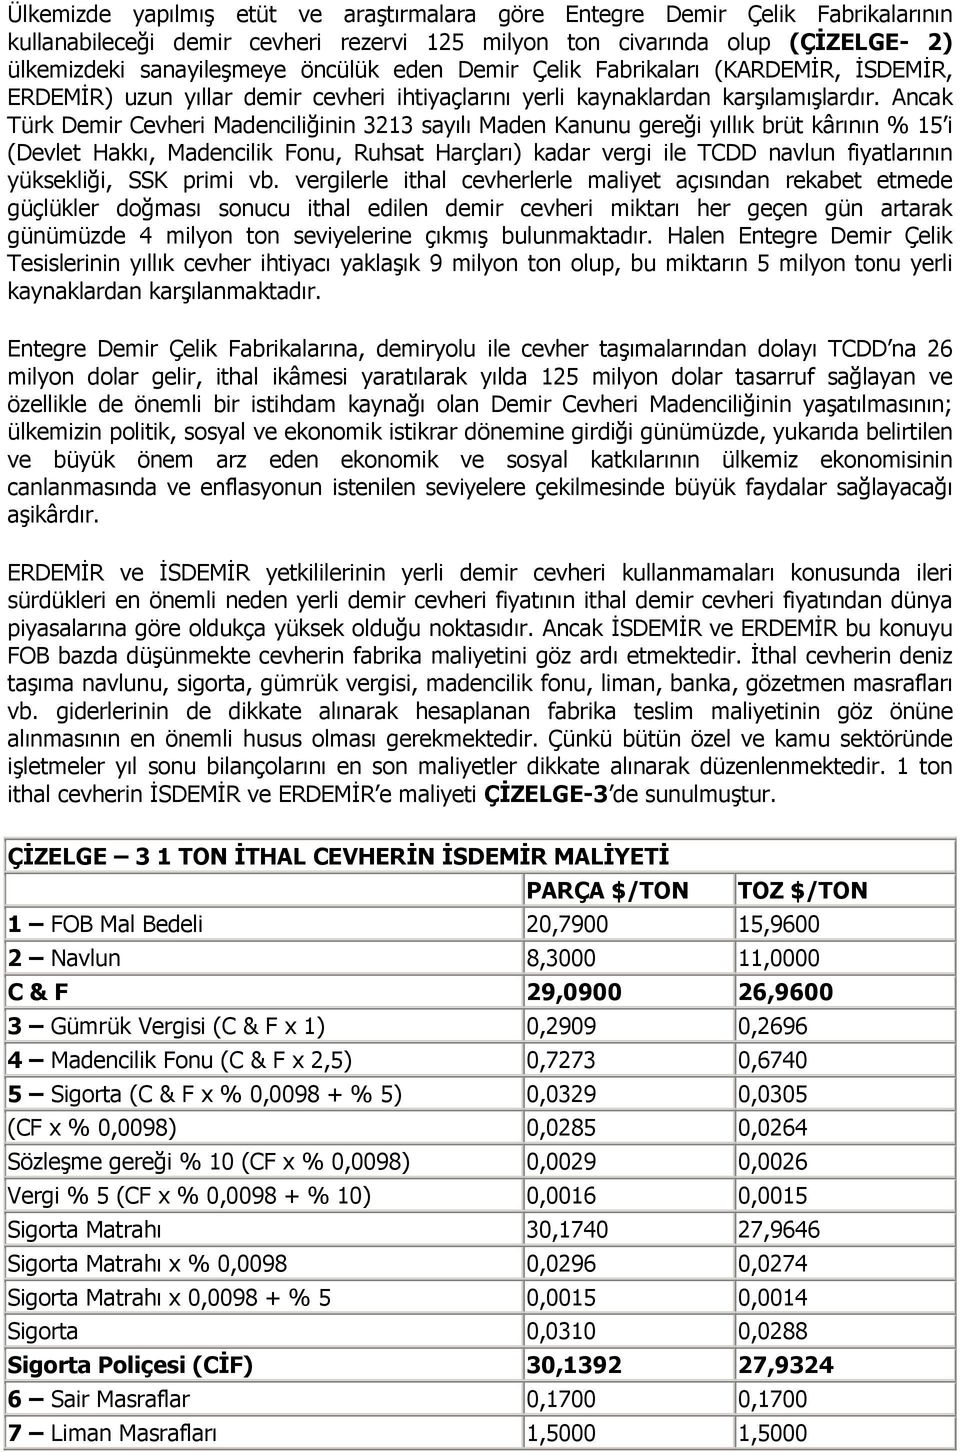 Ancak Türk Demir Cevheri Madenciliğinin 3213 sayılı Maden Kanunu gereği yıllık brüt kârının % 15 i (Devlet Hakkı, Madencilik Fonu, Ruhsat Harçları) kadar vergi ile TCDD navlun fiyatlarının